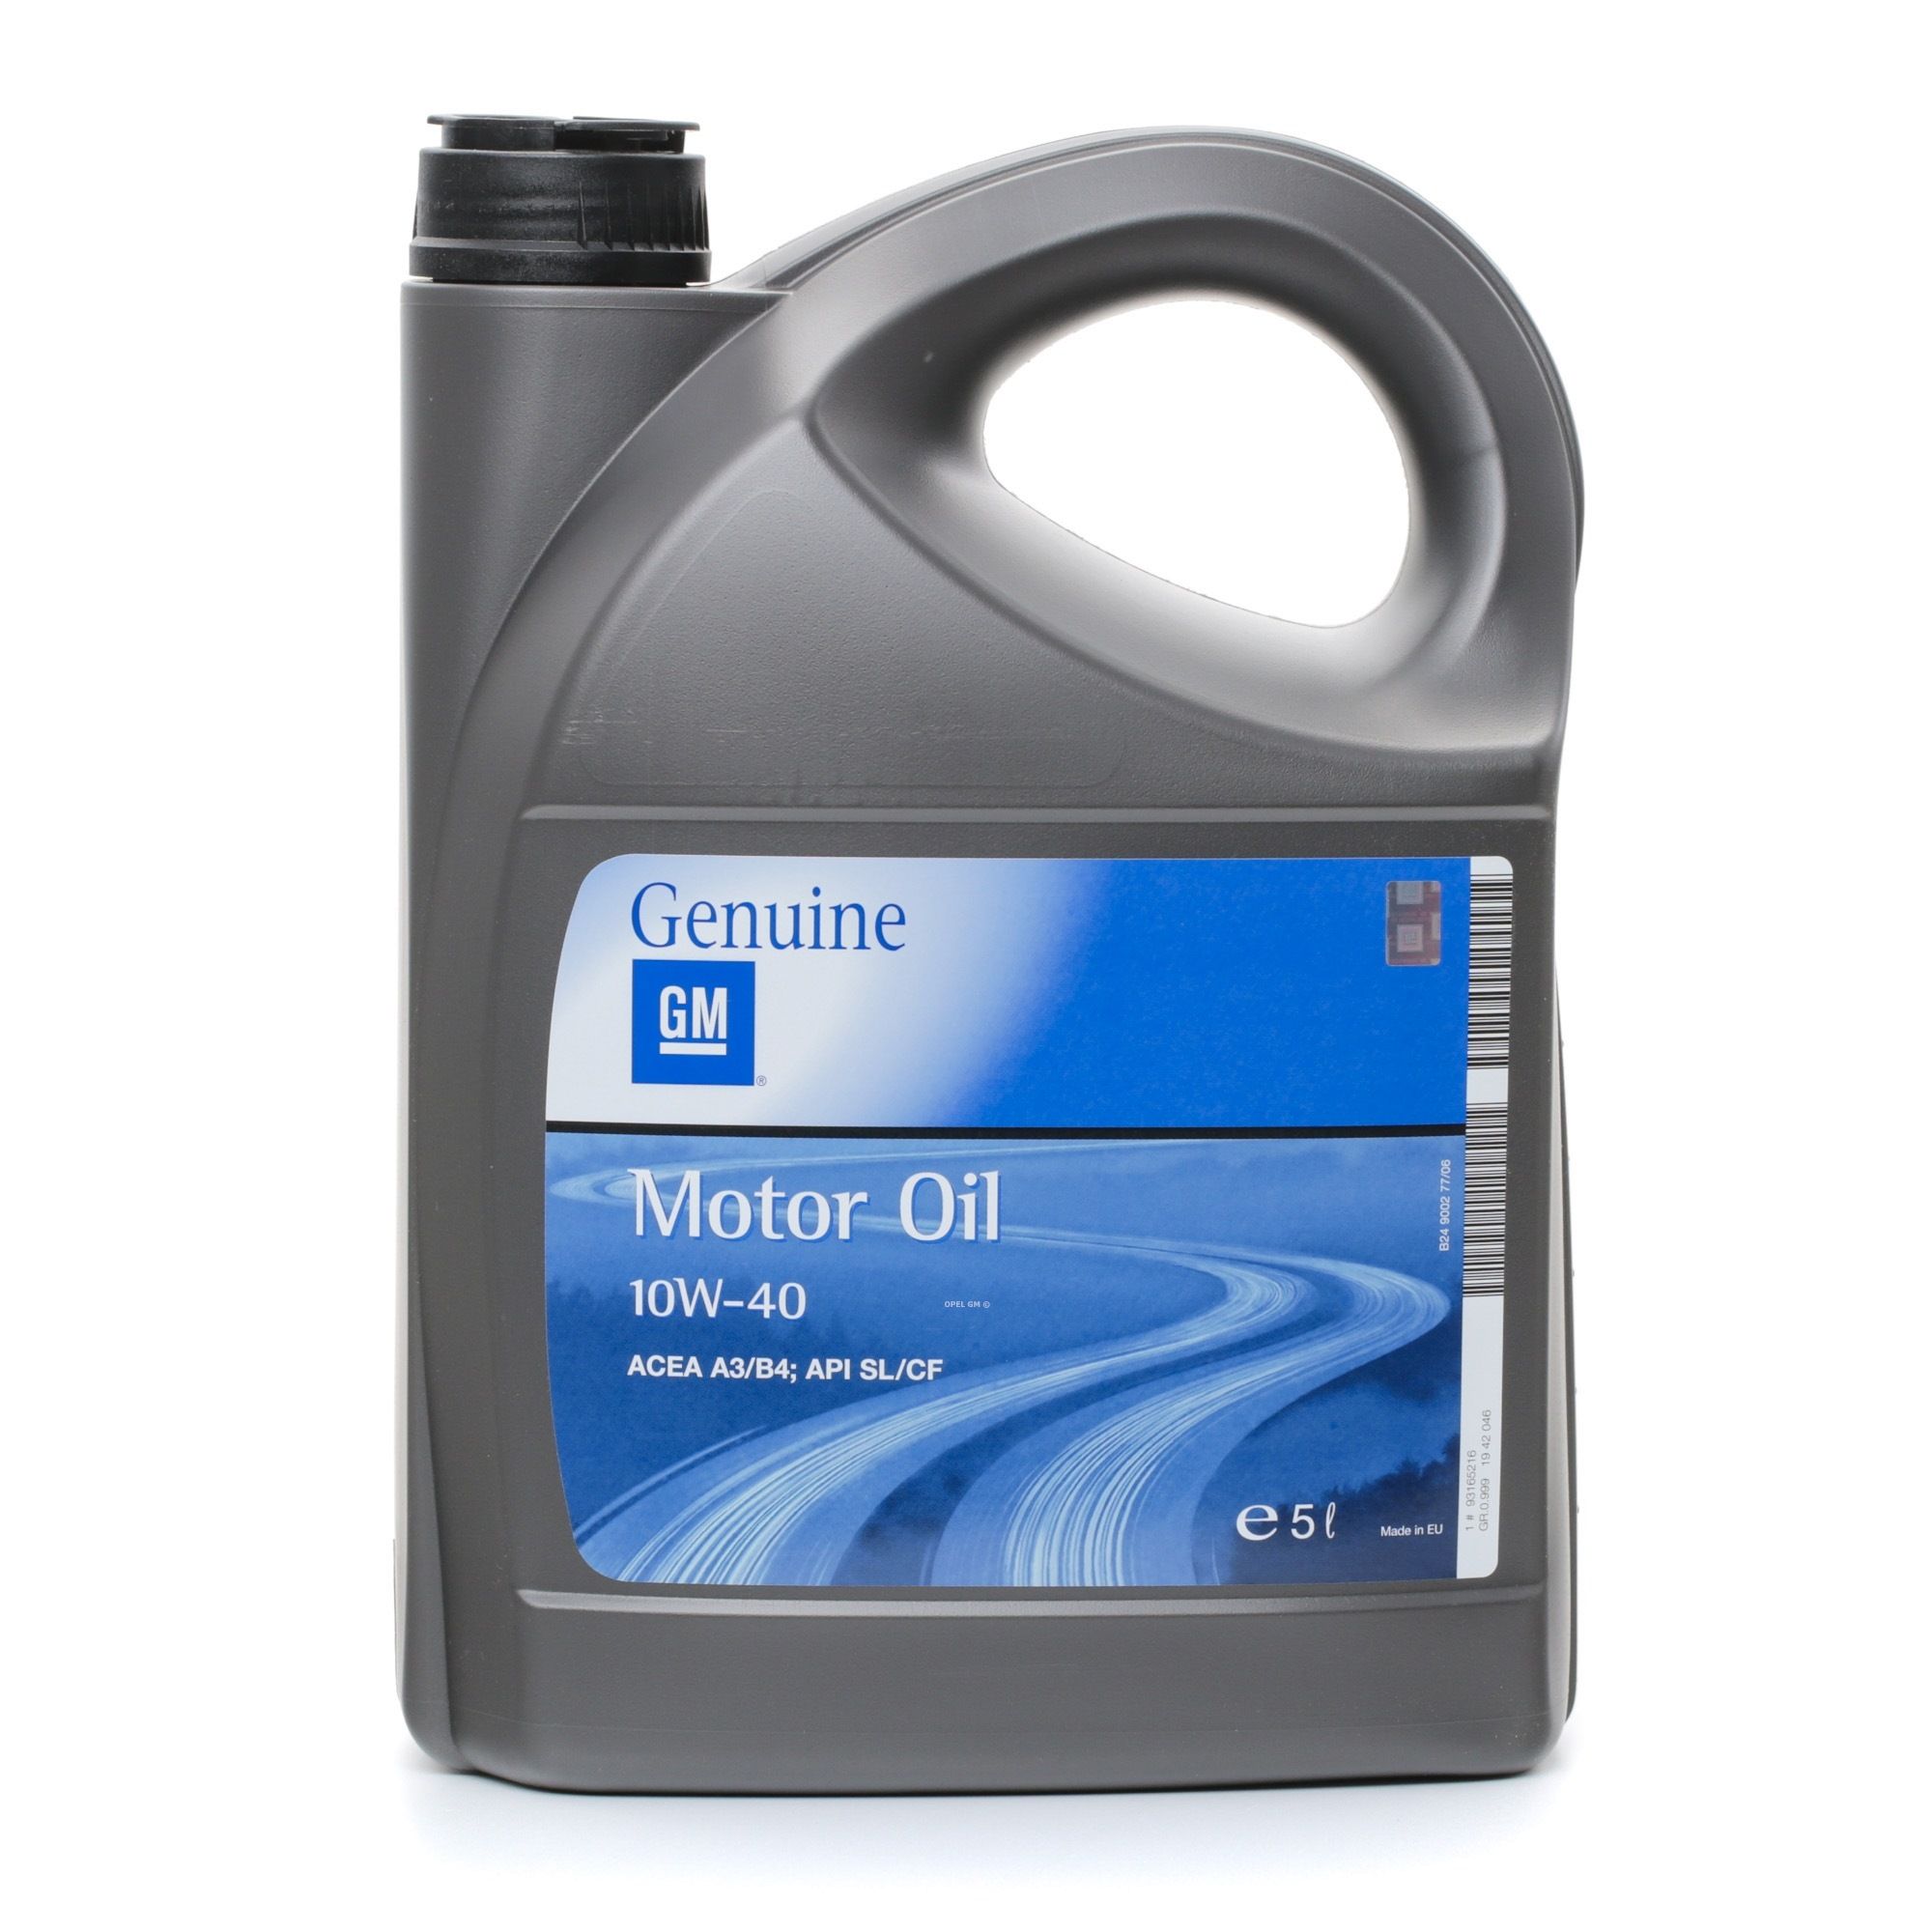 Motorolja OPEL GM 19 42 046 - Oljor och vätskor till Volkswagen delar order